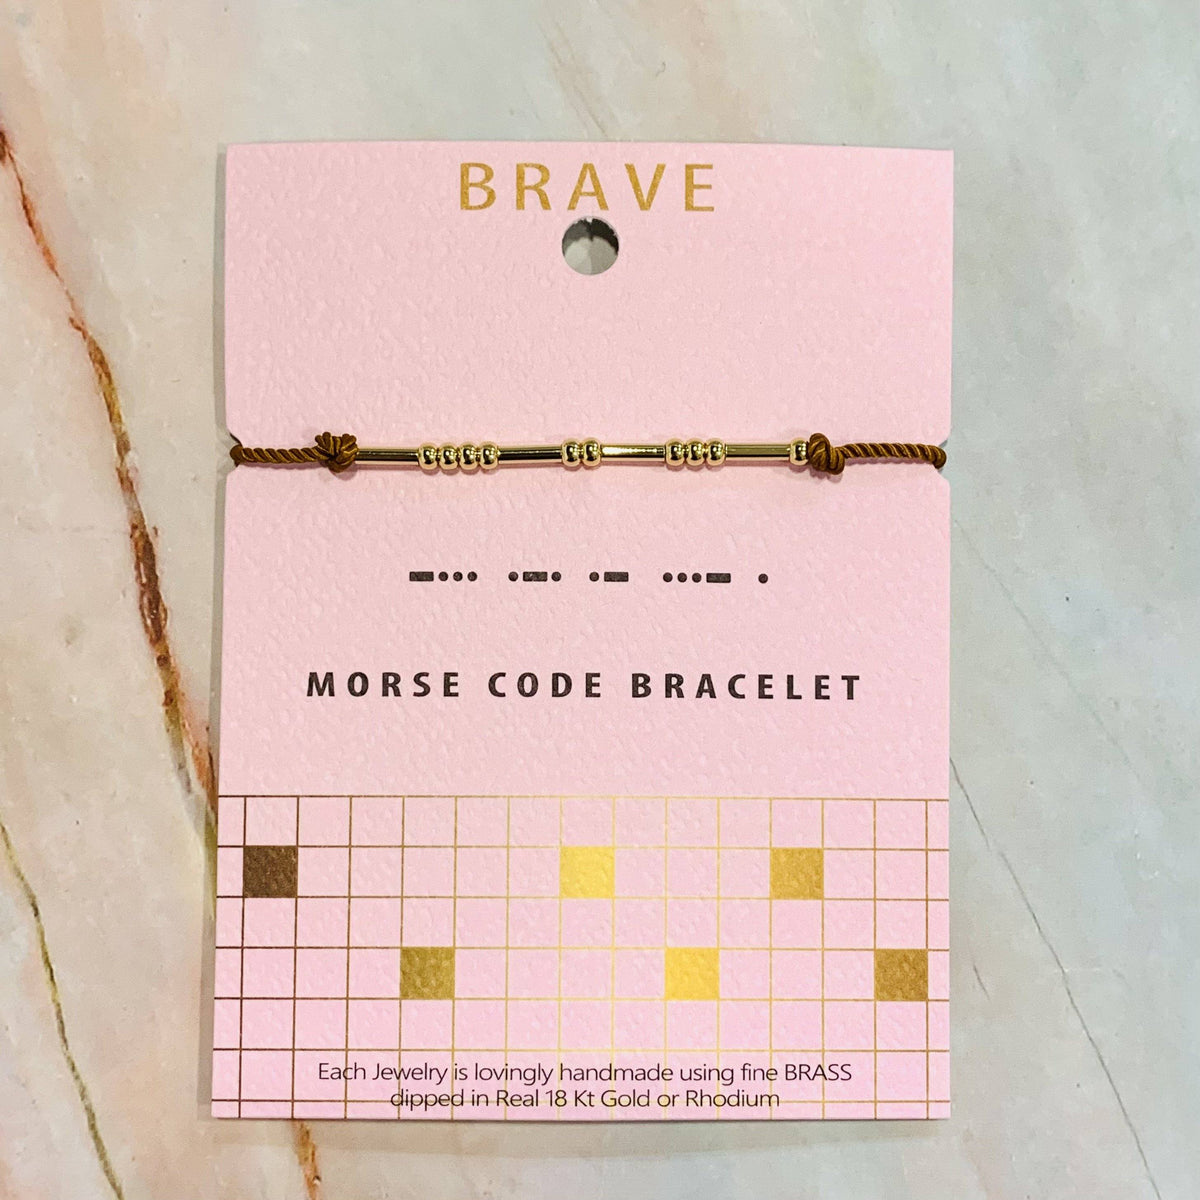 Morse Code Bracelet Lauren-Spencer Brave 